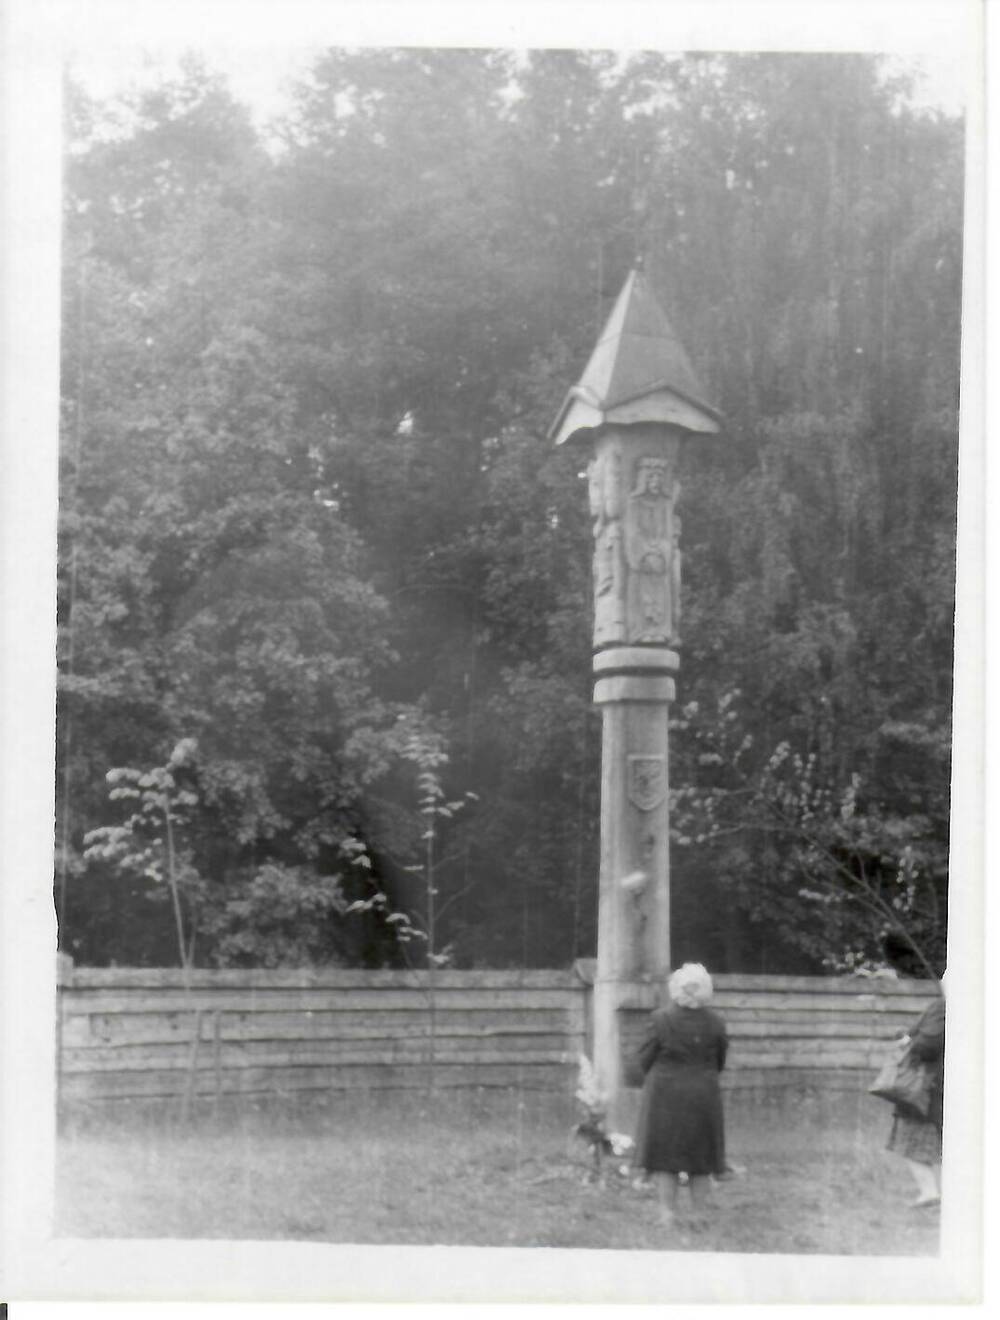 Фотография, черно-белая, глянцевая печать. Женщина стоит перед столпом (традиционный деревянный алтарь Литвы).